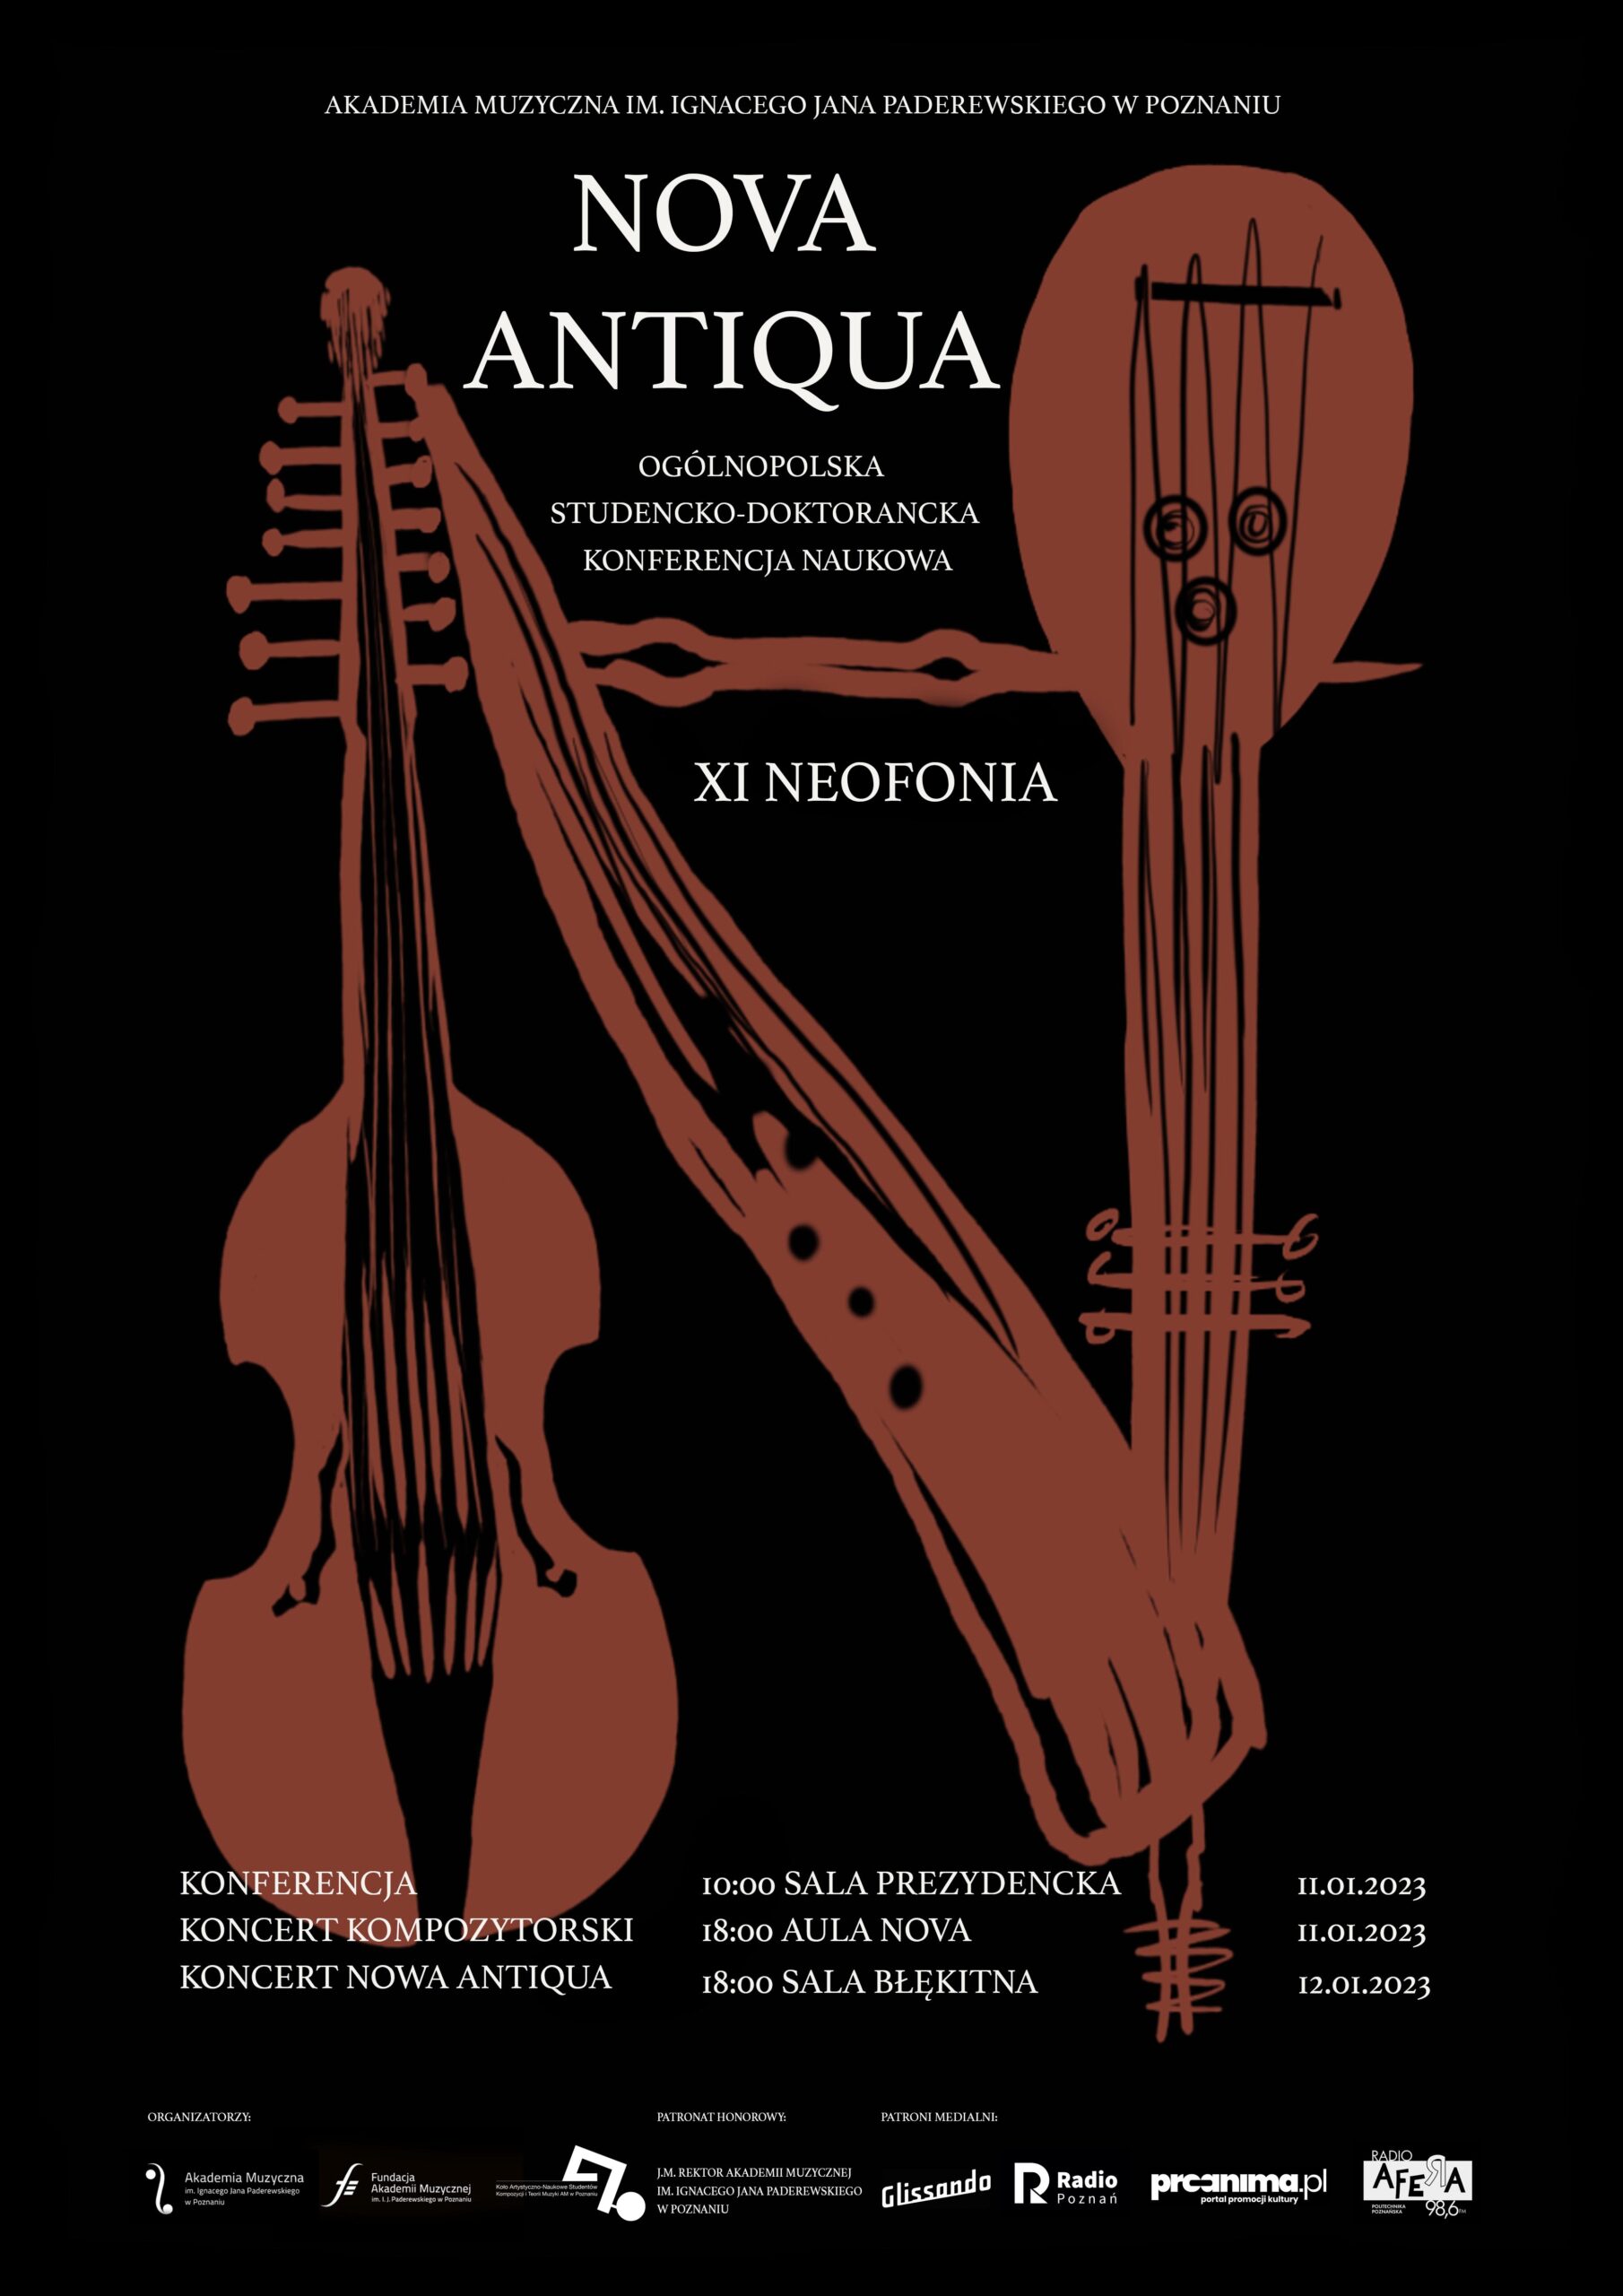 Ciemny plakat - na czarnym tle brązowe rysunki instrumentów - wiolonczela, gamba, harfa i informacje o wydarzeniach XI Neofonii